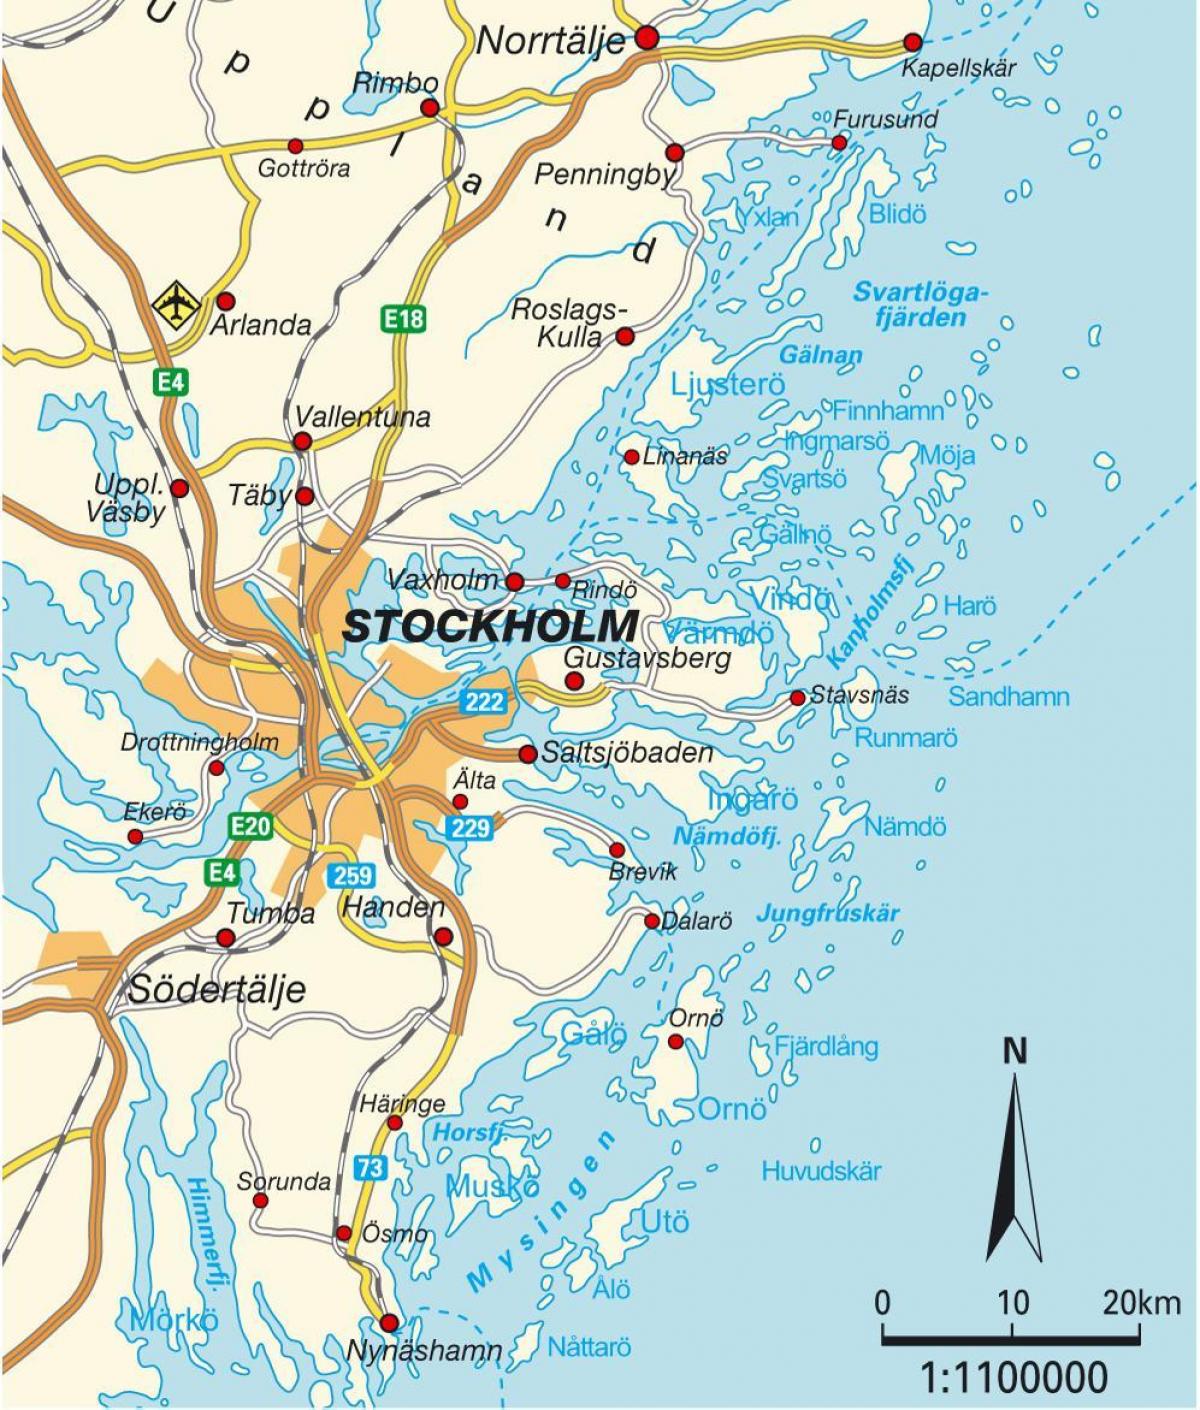 Stockholm Swedia peta kota